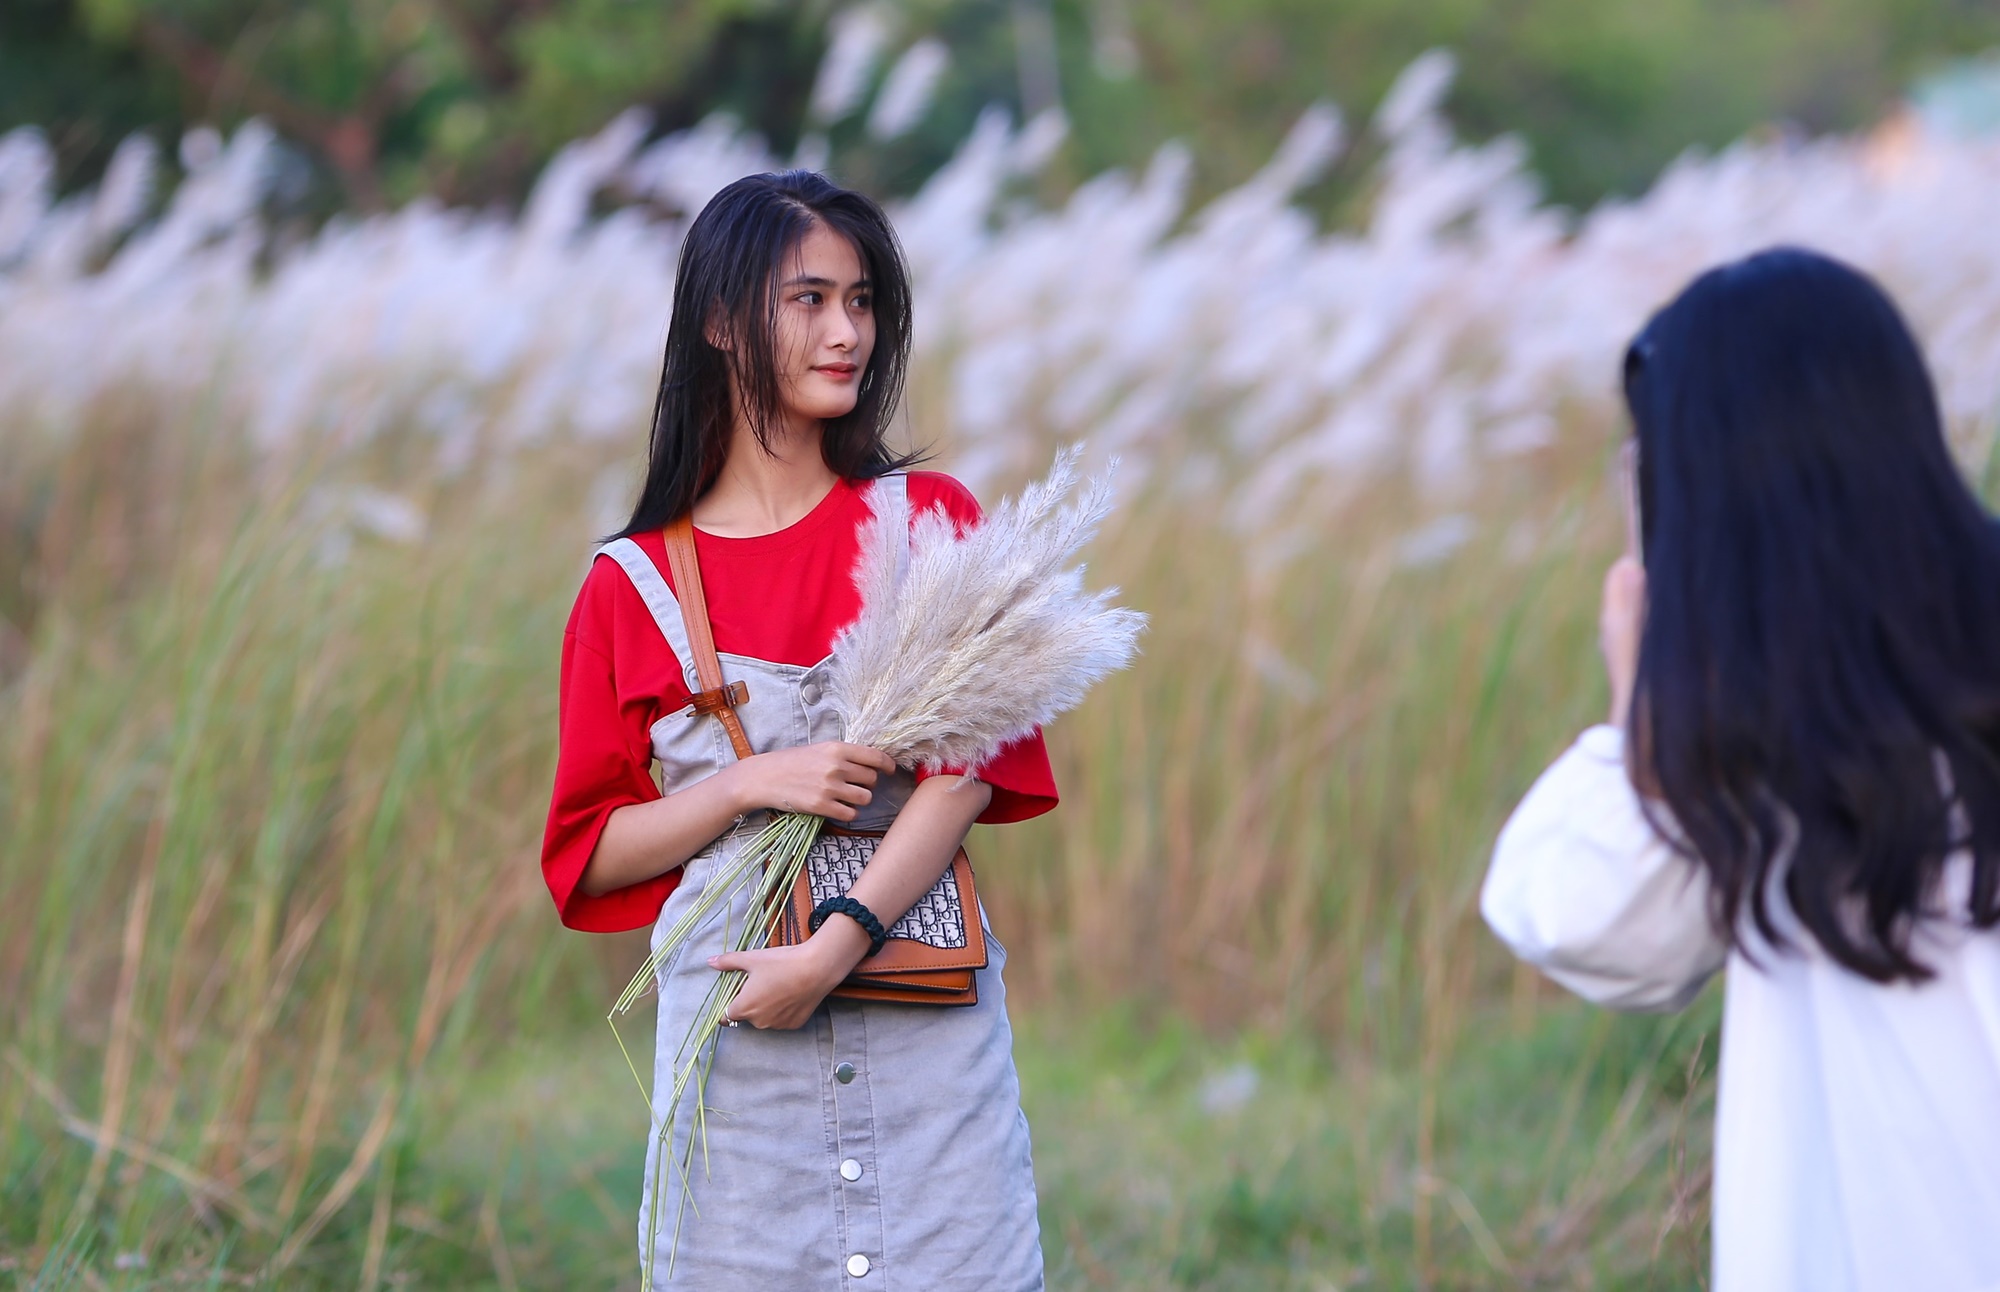 Người dân và du khách đổ xô check-in đồng cỏ lau trắng ở Đà Nẵng - Ảnh 4.